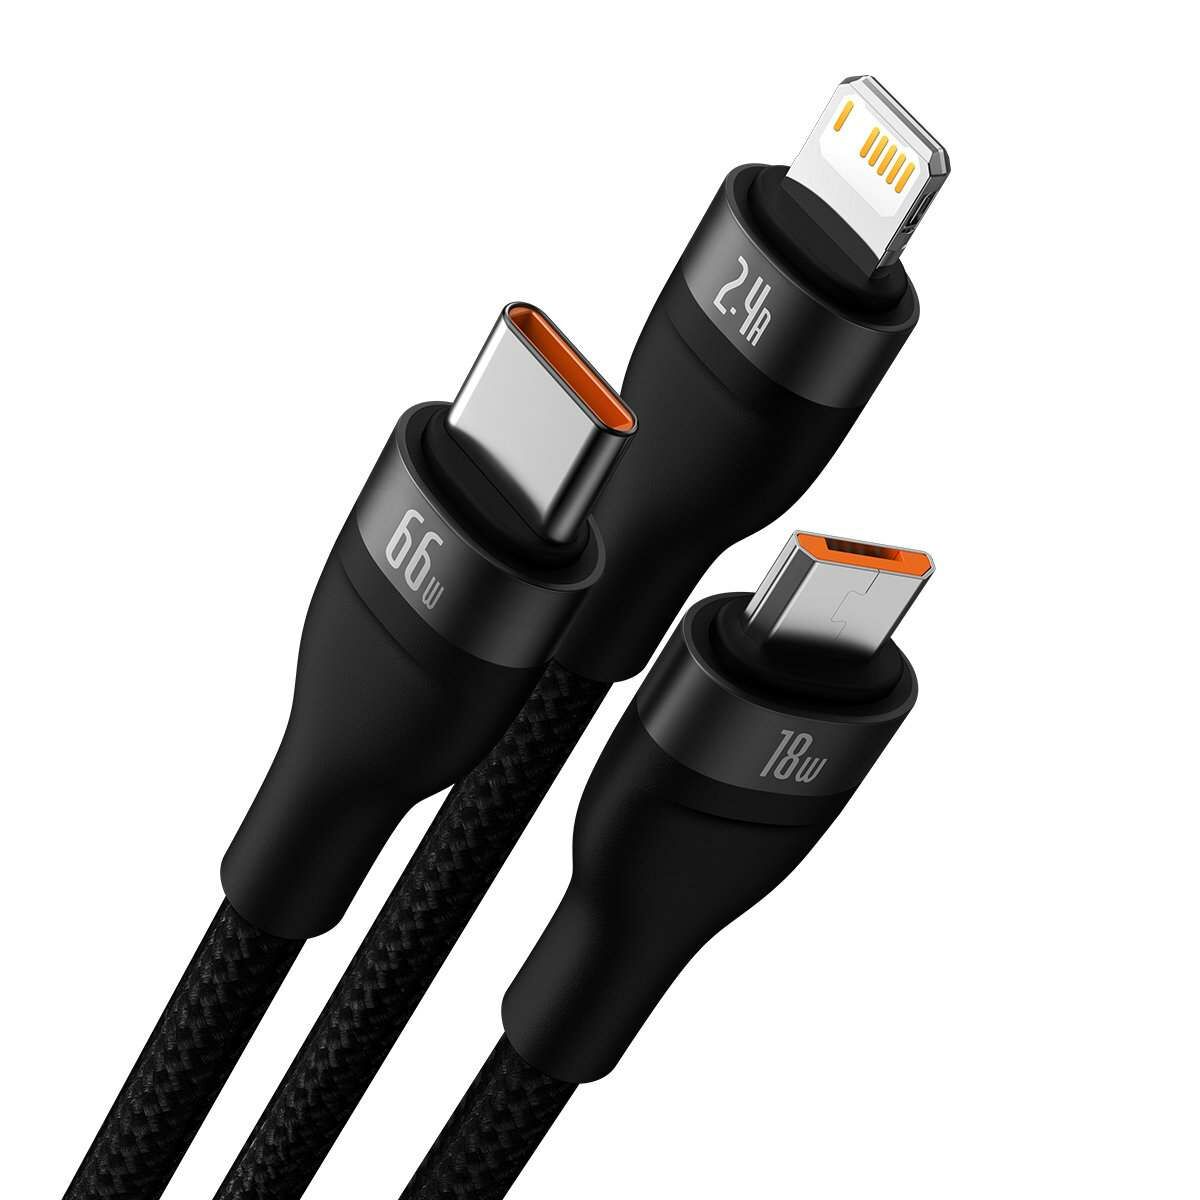 Kép 2/5 - Baseus Flash II 3-in-1 töltő- és adatkábel USB Type-C - Micro / Lightning / Type-C 66W, 1.2m, fekete (CASS040001)